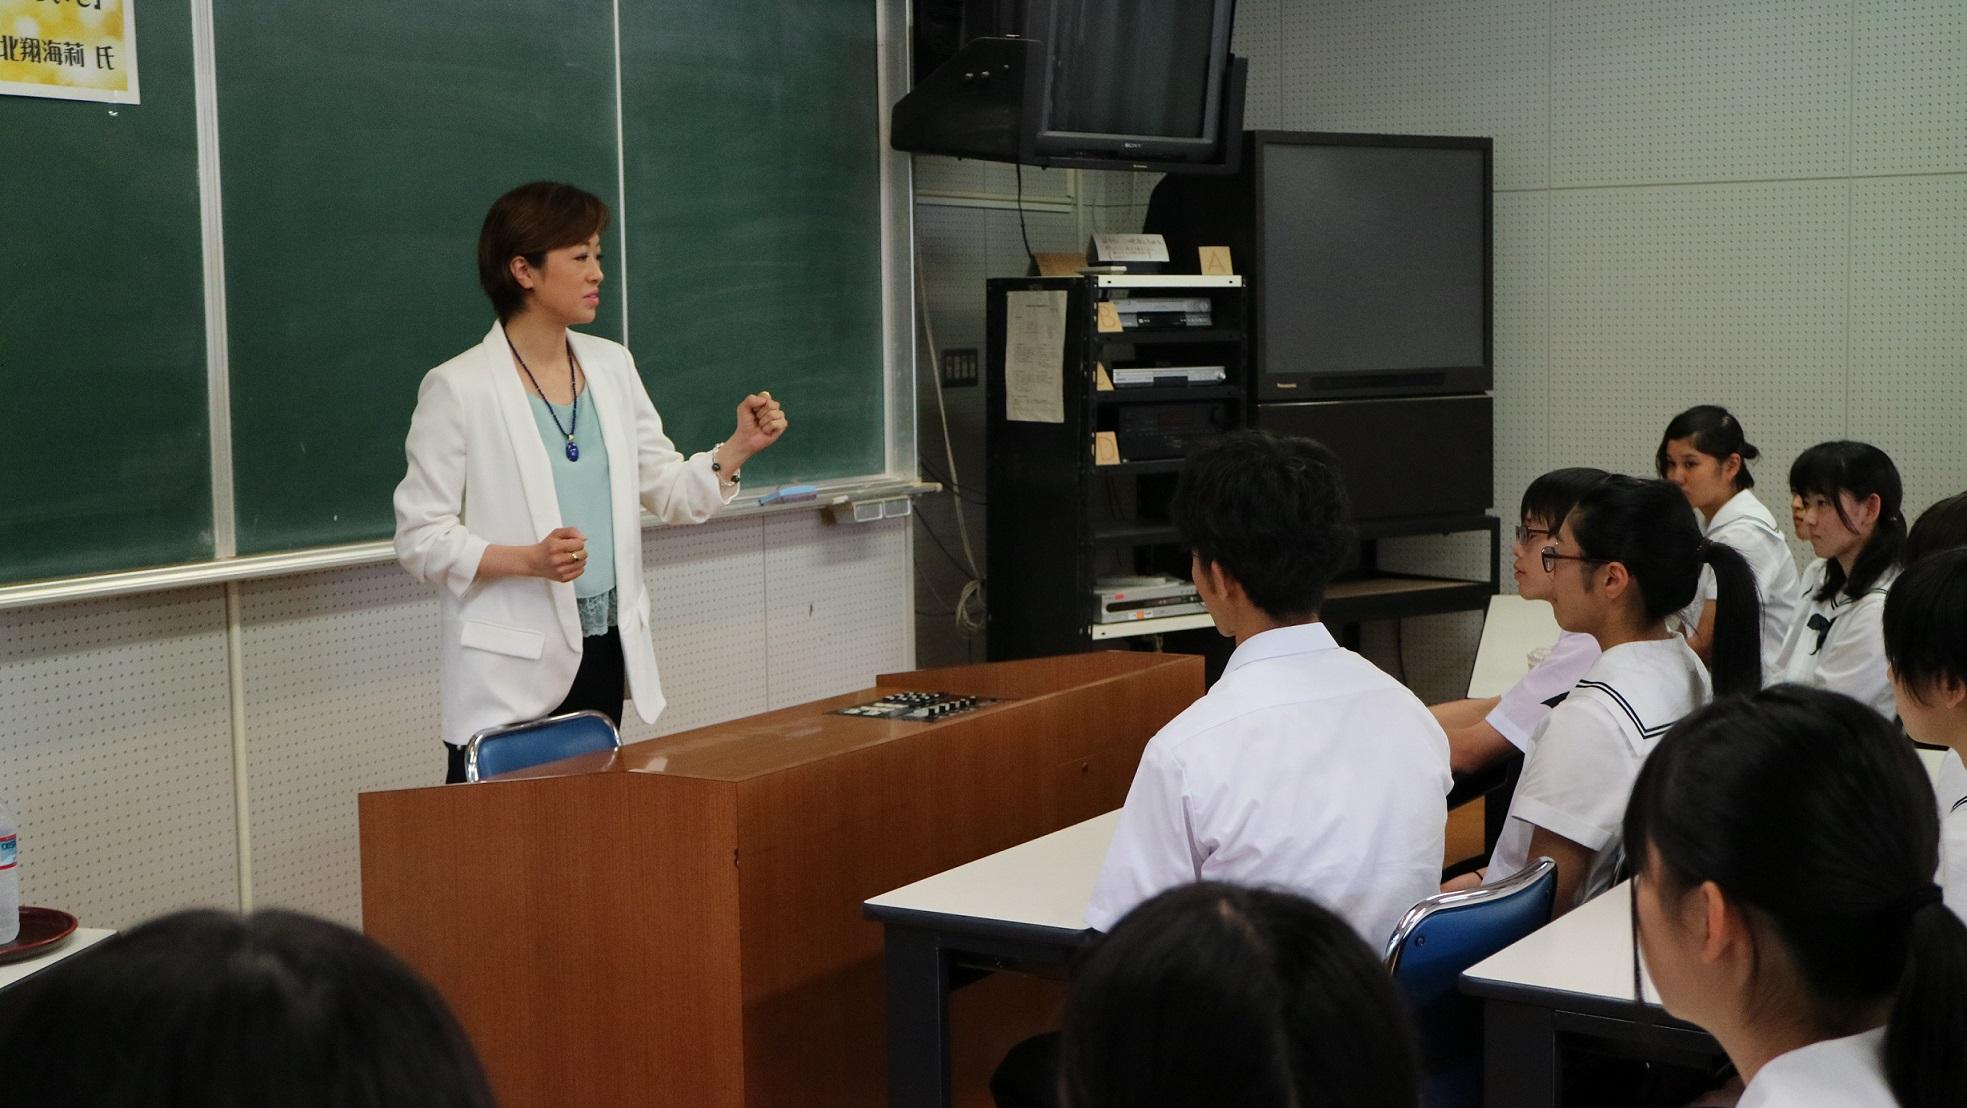 教室で着席している生徒たちの前で身振りをしながら話をしている北翔さんの写真